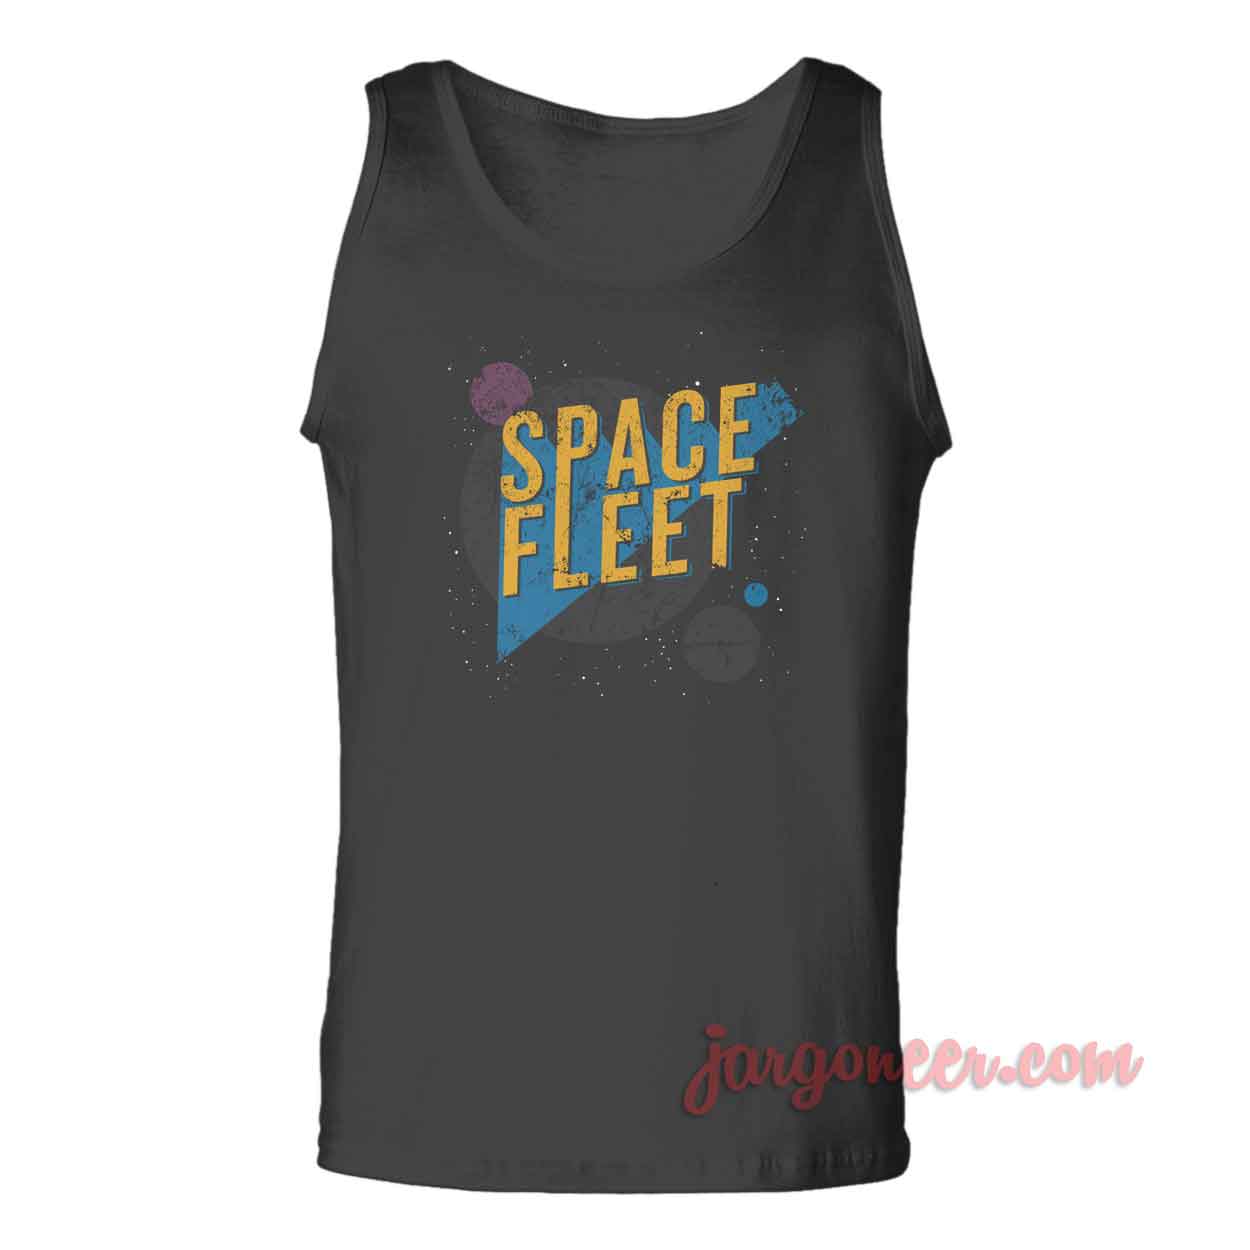 Space Fleet - Shop Unique Graphic Cool Shirt Designs